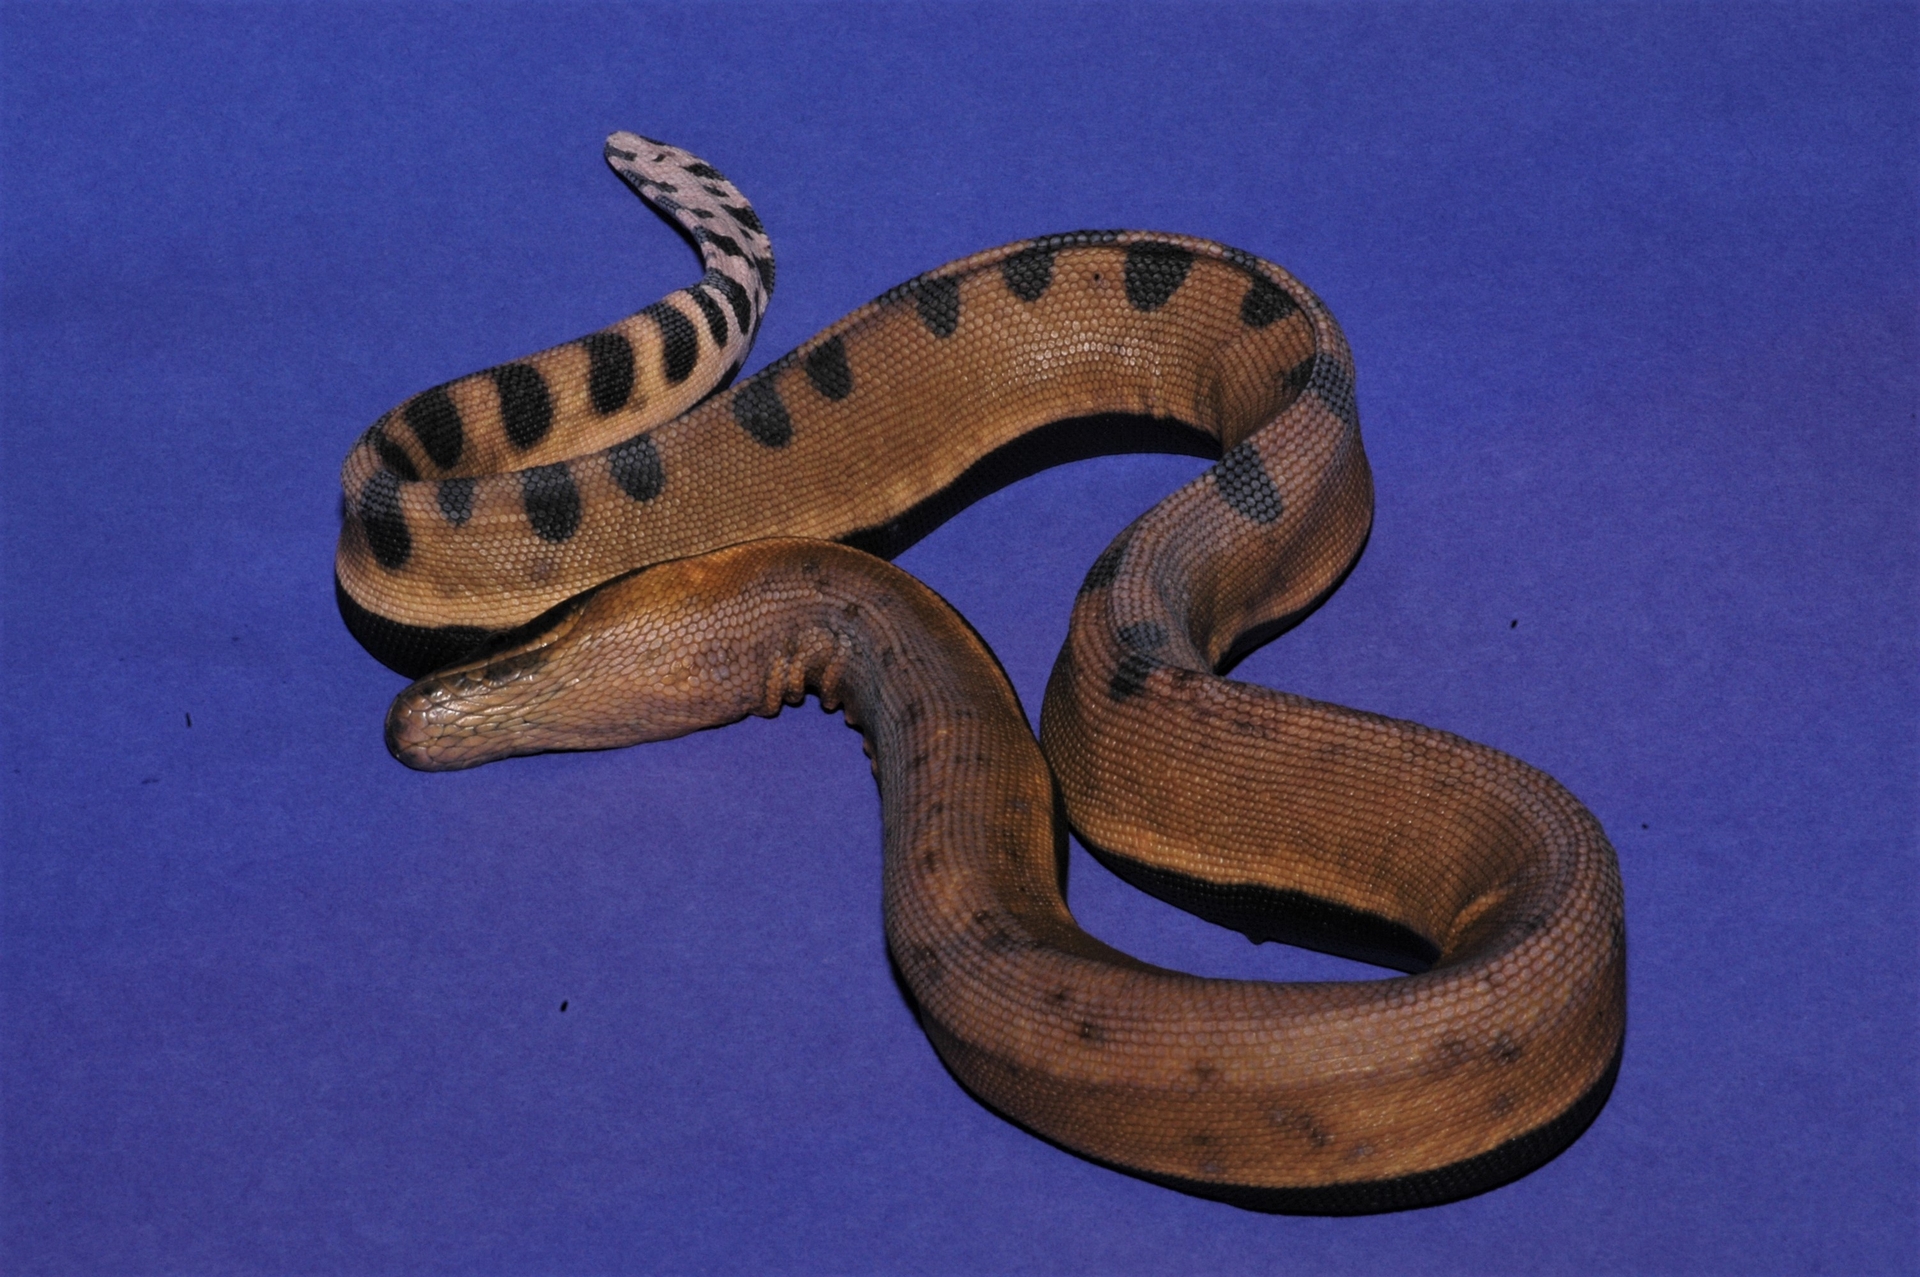 黄唇扁尾海蛇图片